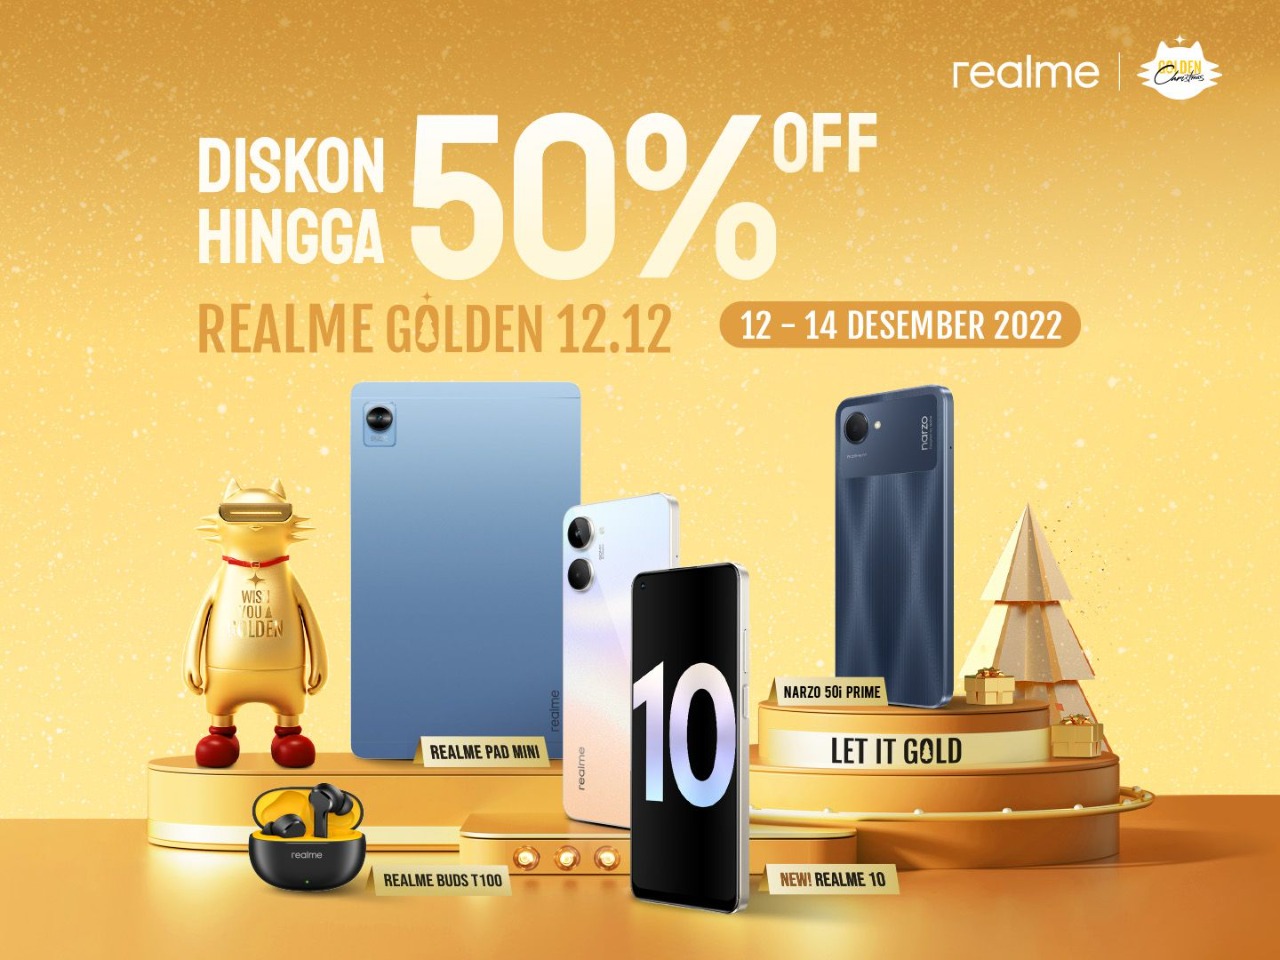 Realme Hadirkan Realme Golden 12.12, Momen Tepat bagi Anak Muda Dapatkan Produk dengan Harga Terbaik Diskon Hingga 50%